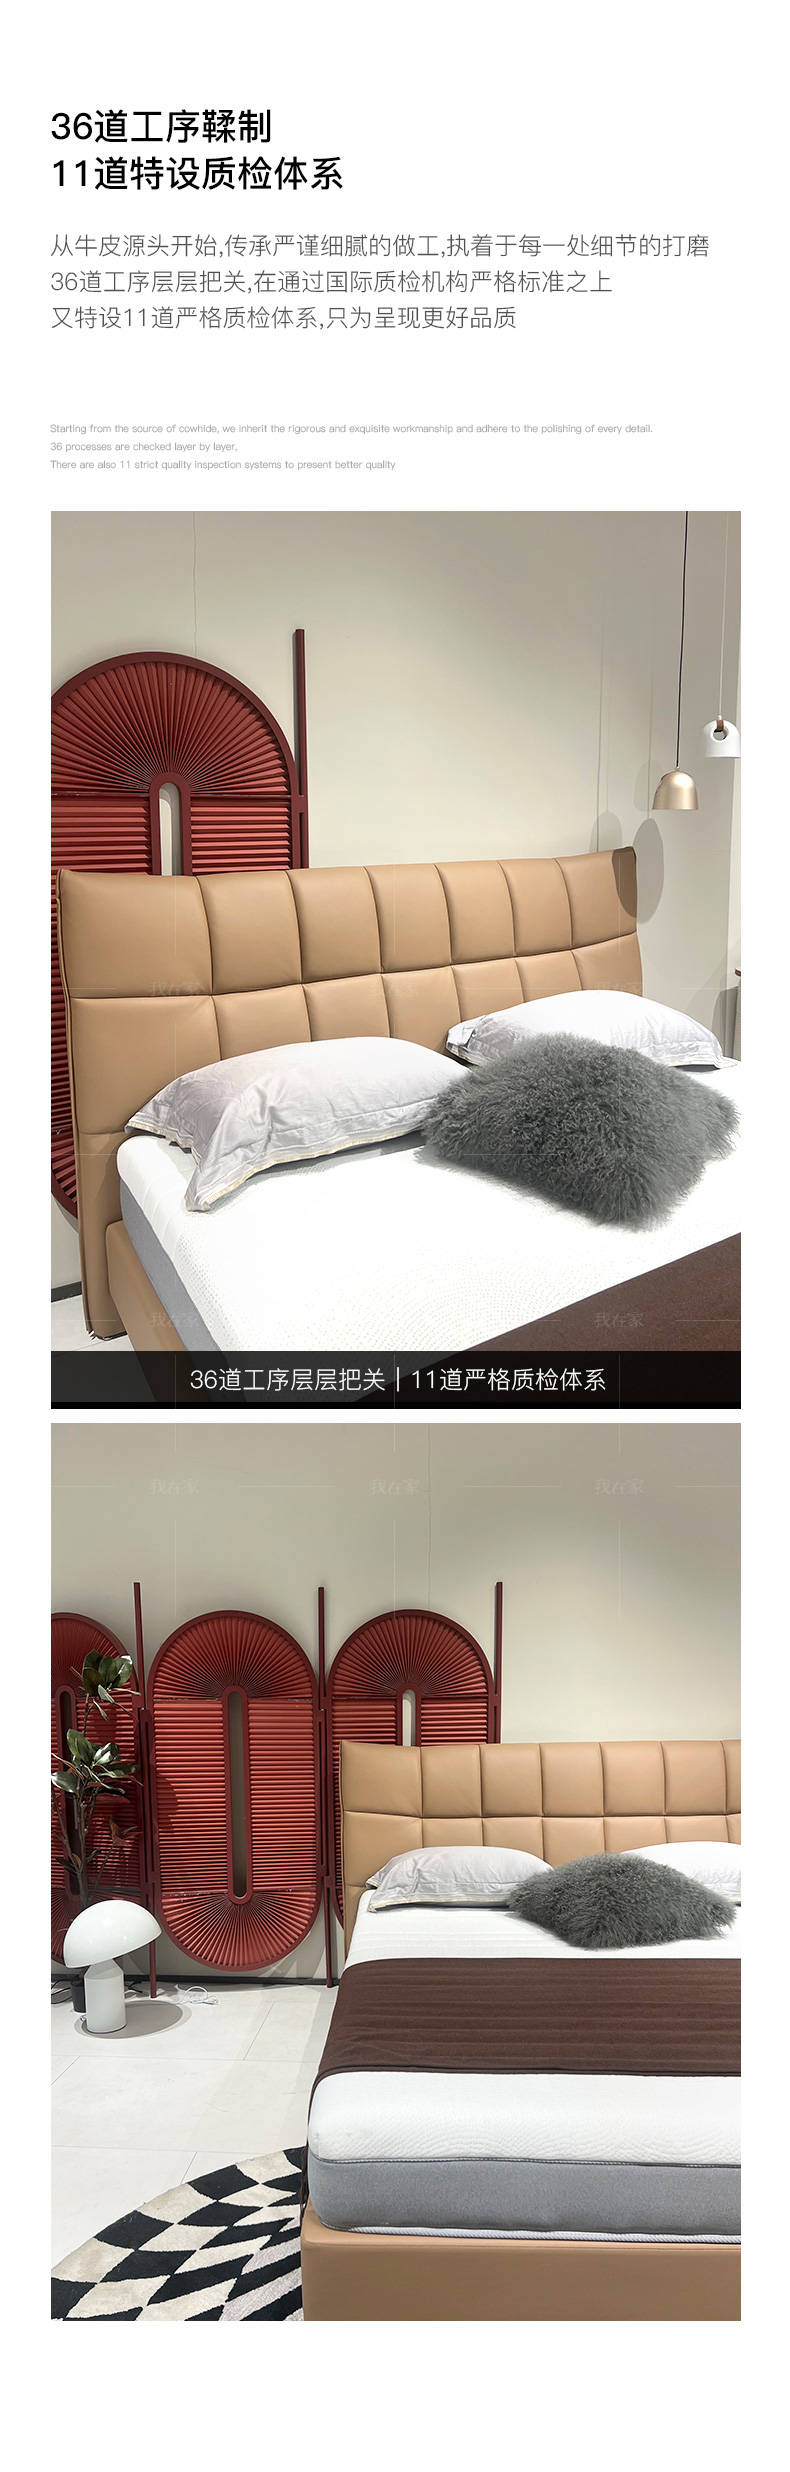 意式极简风格方块双人床的家具详细介绍